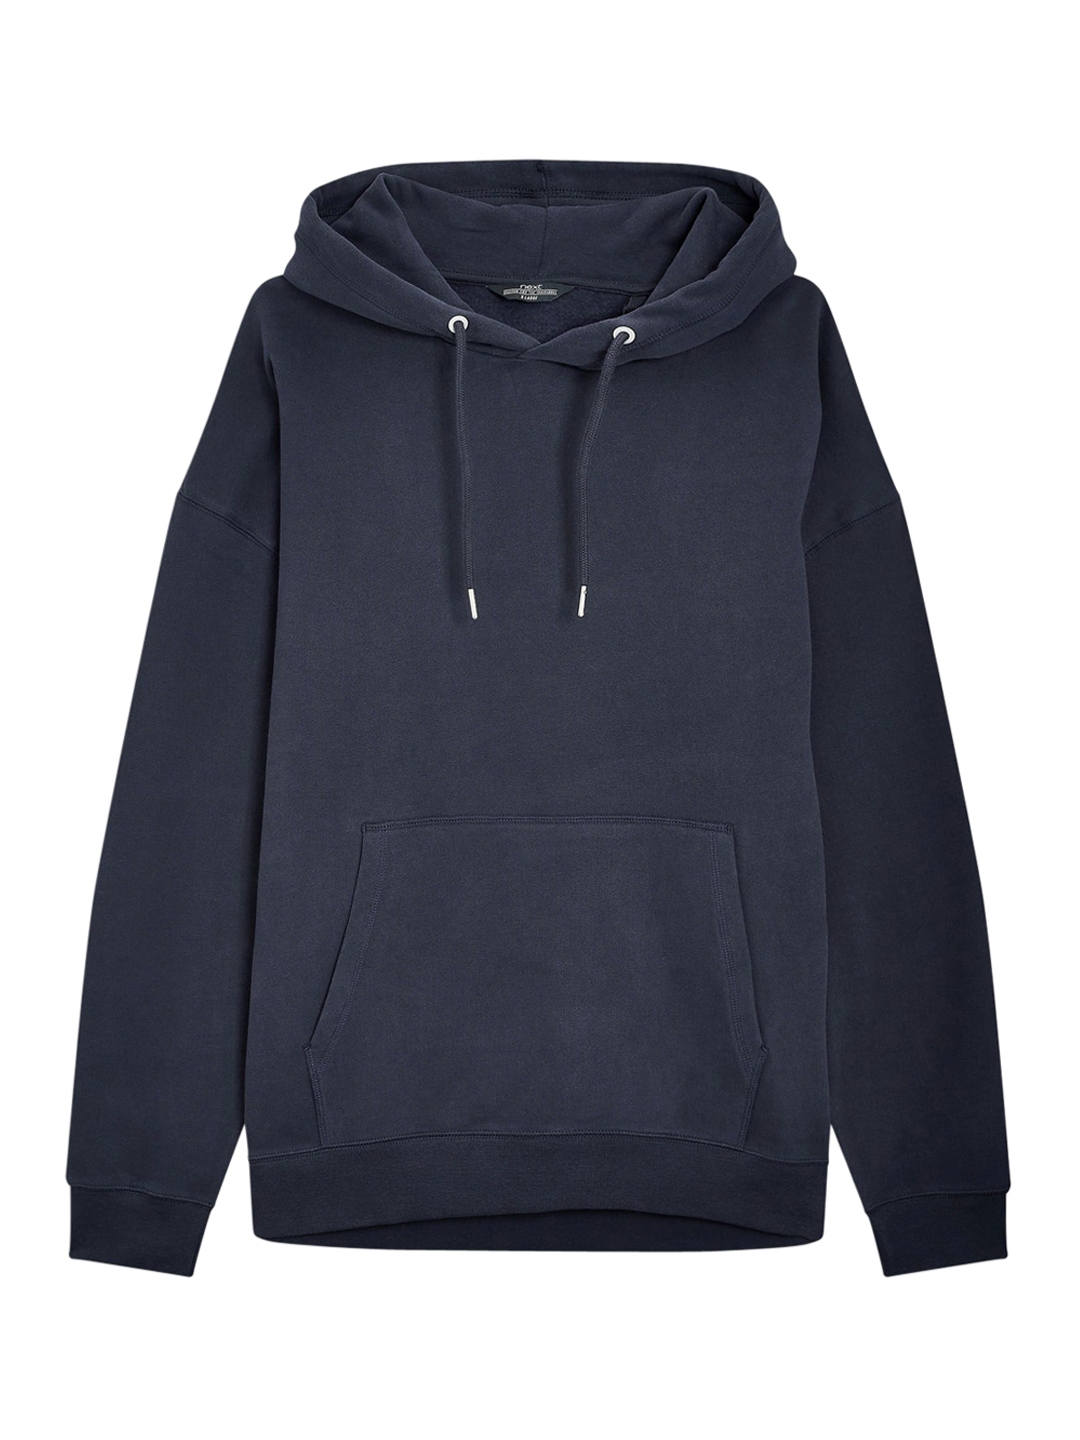 Buy NEXT Men Black Solid Hooded Sweatshirt - Sweatshirts for Men ...